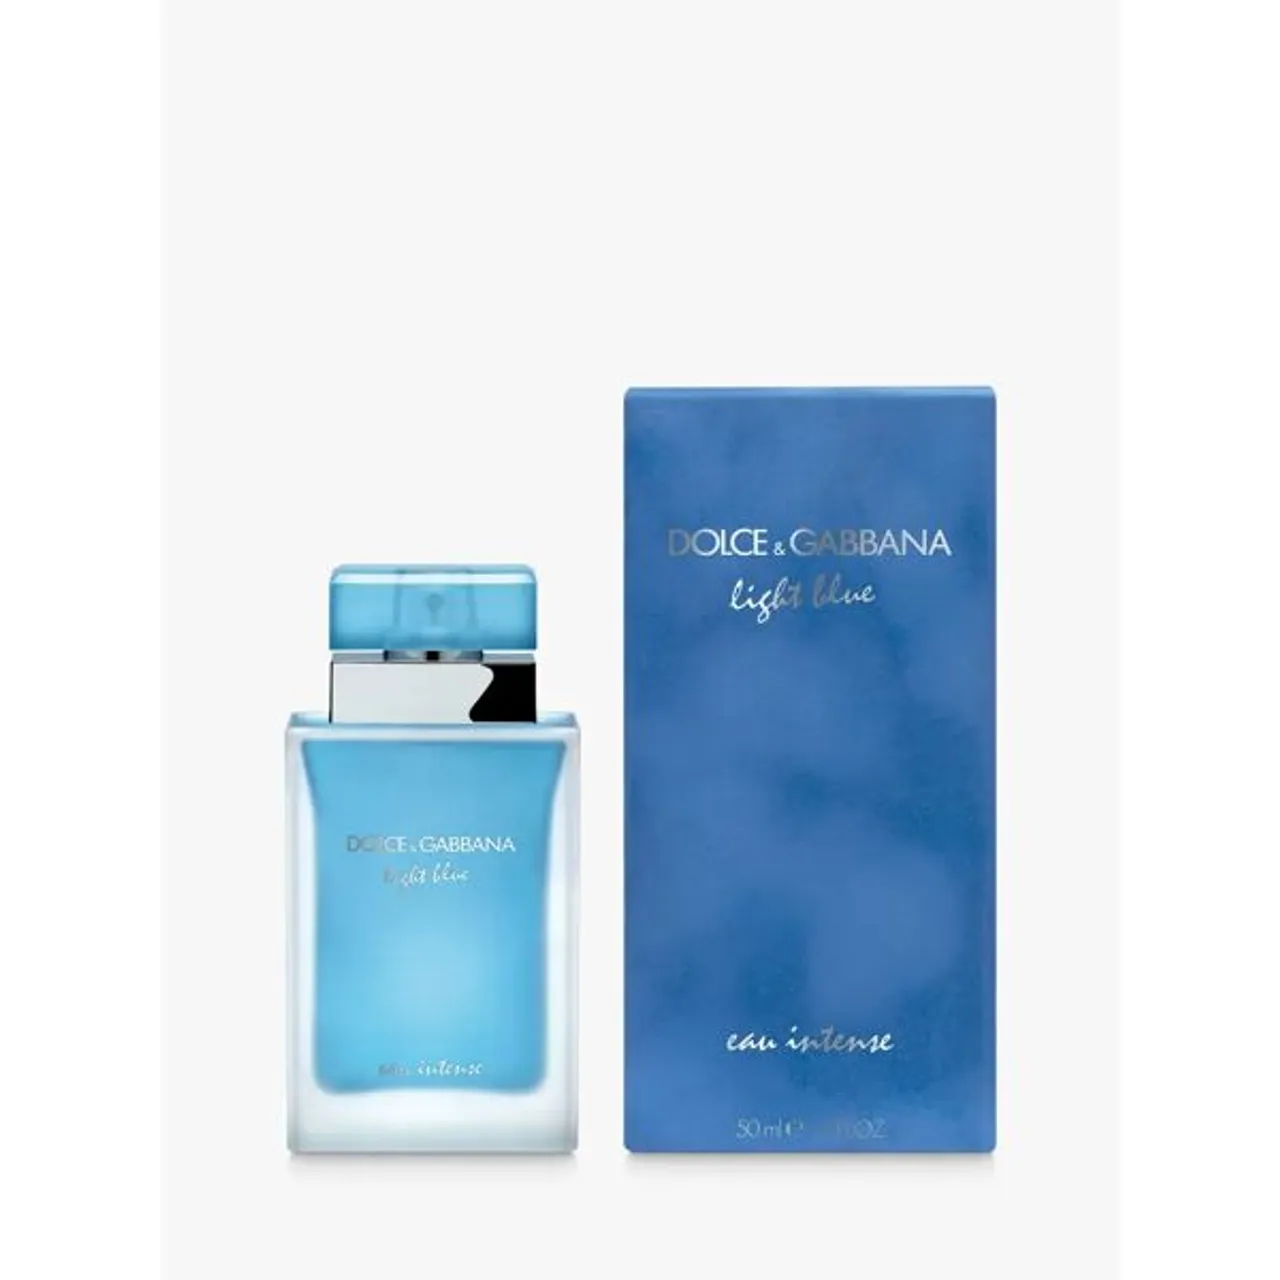 Dolce & Gabbana Light Blue Eau Intense Eau de Parfum - Female - Size: 25ml